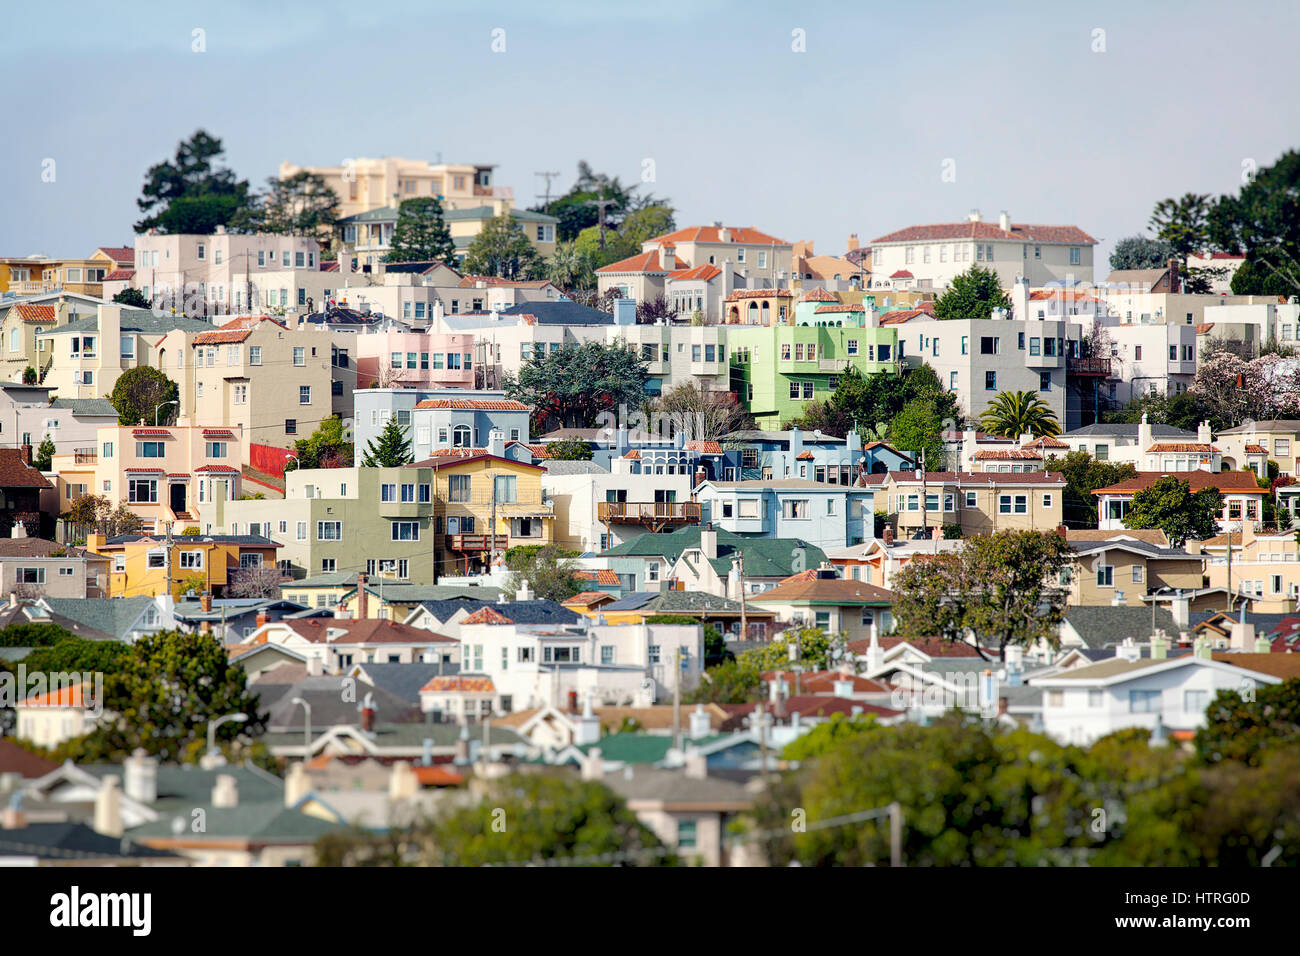 Weiche Tilt-Shift-Effekt auf einem Hügel, überfüllt mit Häusern in einem Viertel von San Francisco. Stockfoto